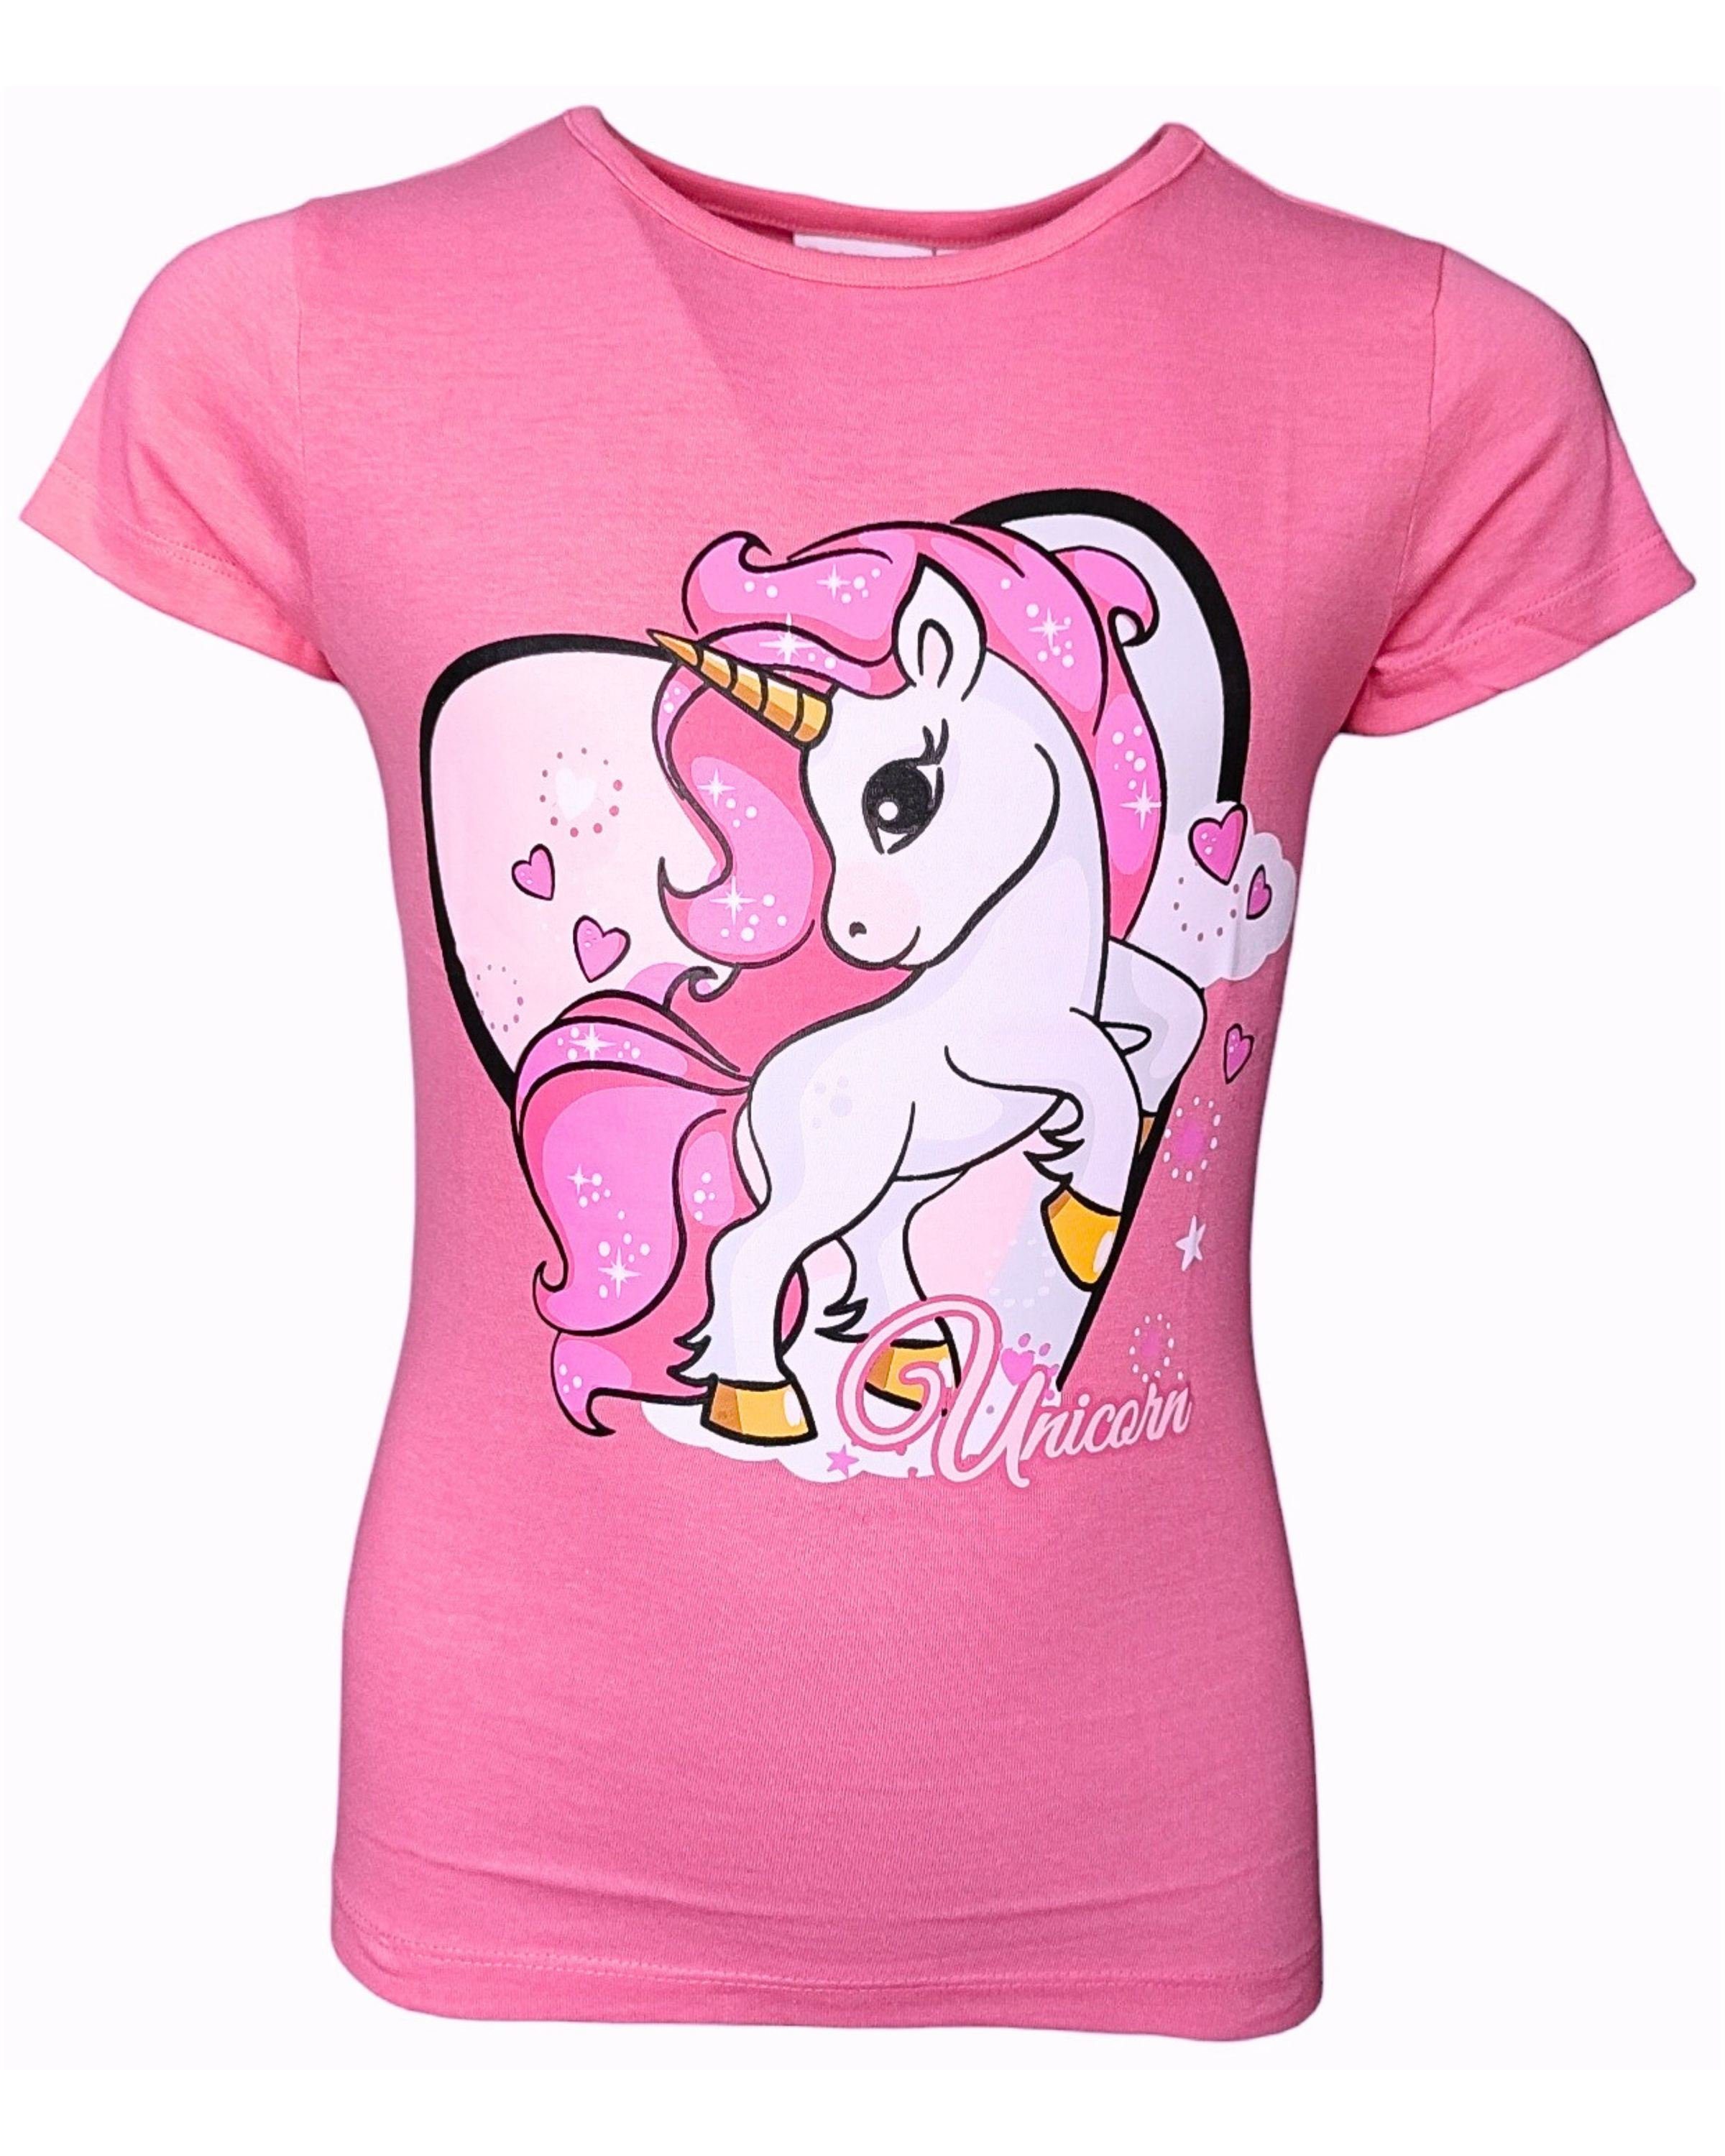 United Essentials T-Shirt Einhorn Mädchen Kurzarmshirt aus Baumwolle Gr. 98 - 128 cm Pink